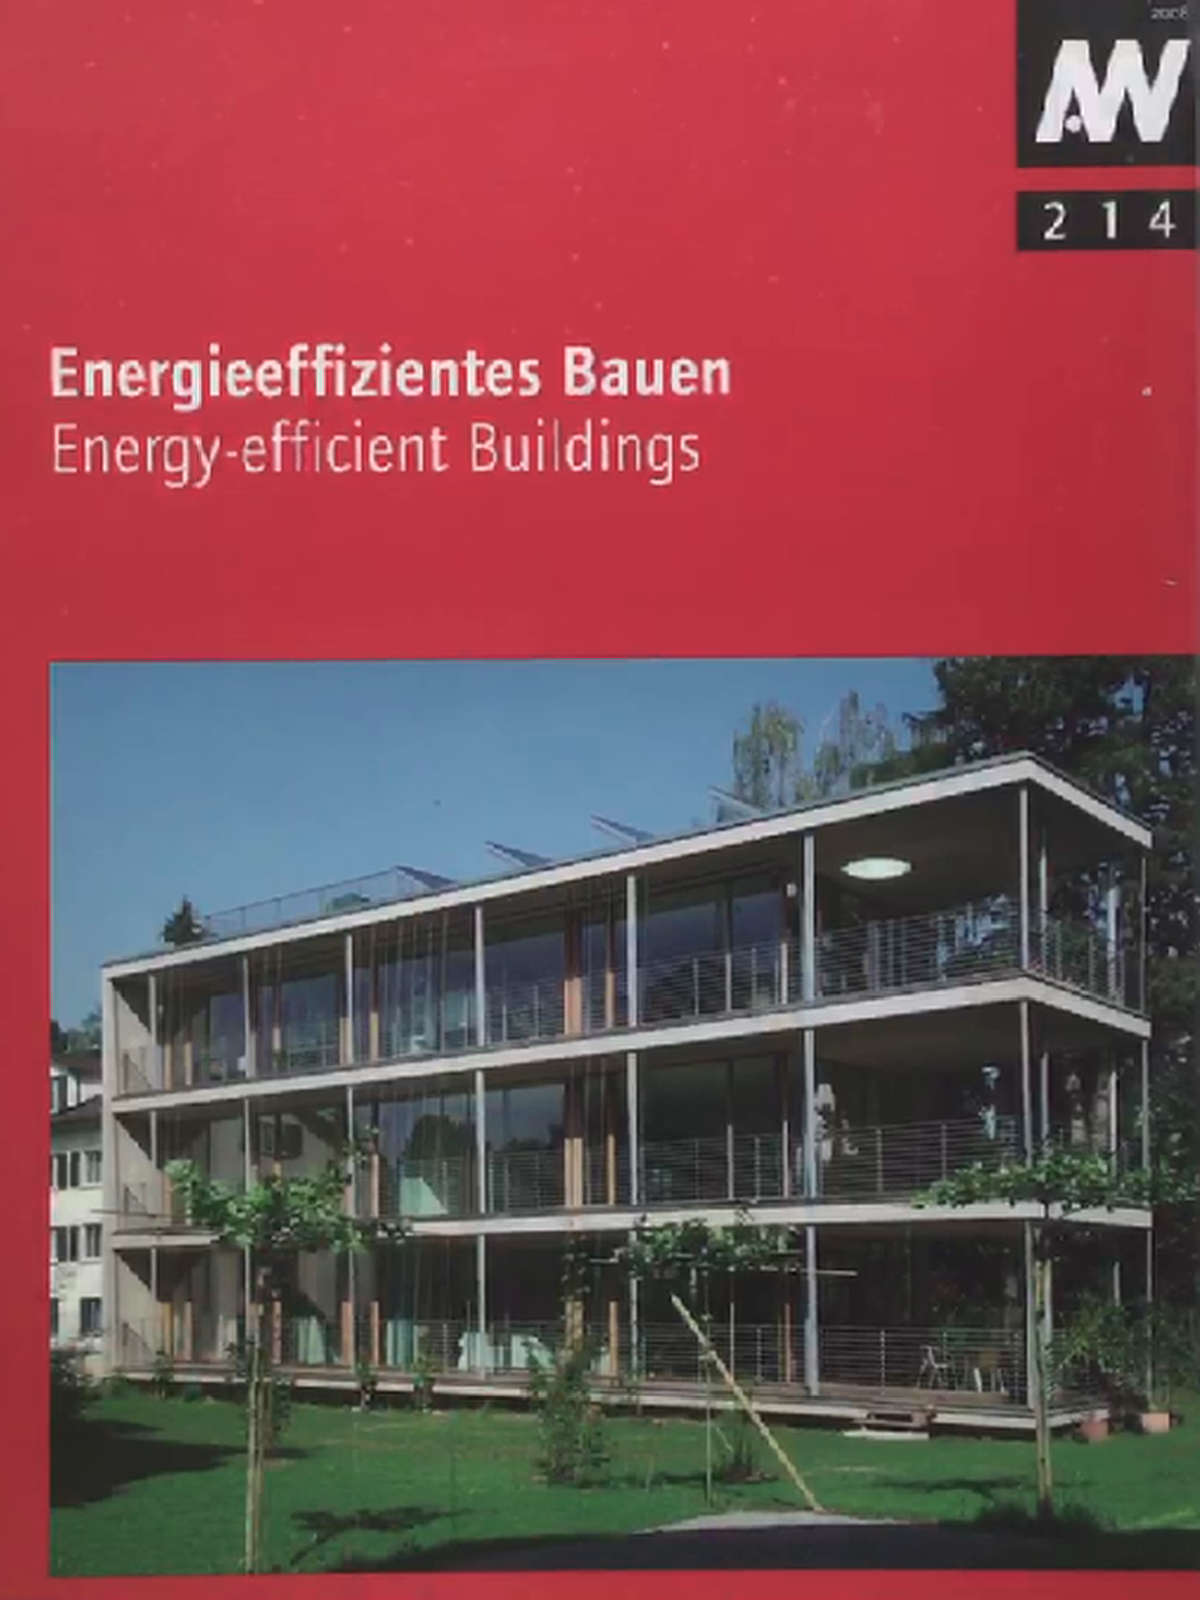 Energieeffizientes Bauen: Energy-efficient Building (aw architektur + wettbewerbe /aw architecture + competitions / Das internationale Architekturmagazin mit thematischem Schwerpunkt)